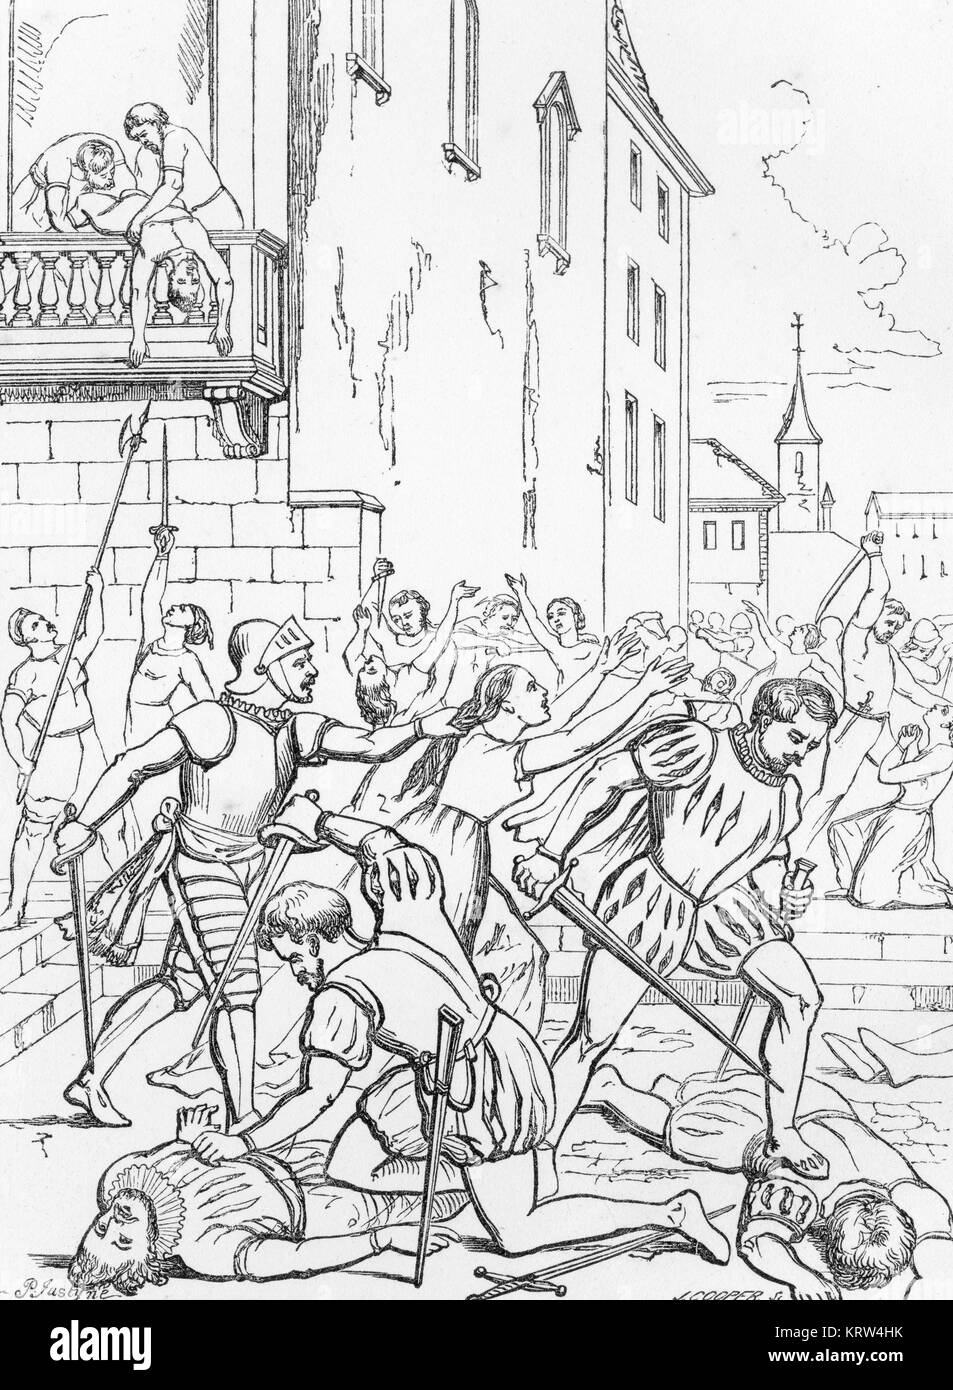 Une gravure du Massacre de la journée St Bartholemew le 24 août 1572, lorsque les Catholiques assassiné au moins 70 000 huguenots dans toute la France. Banque D'Images